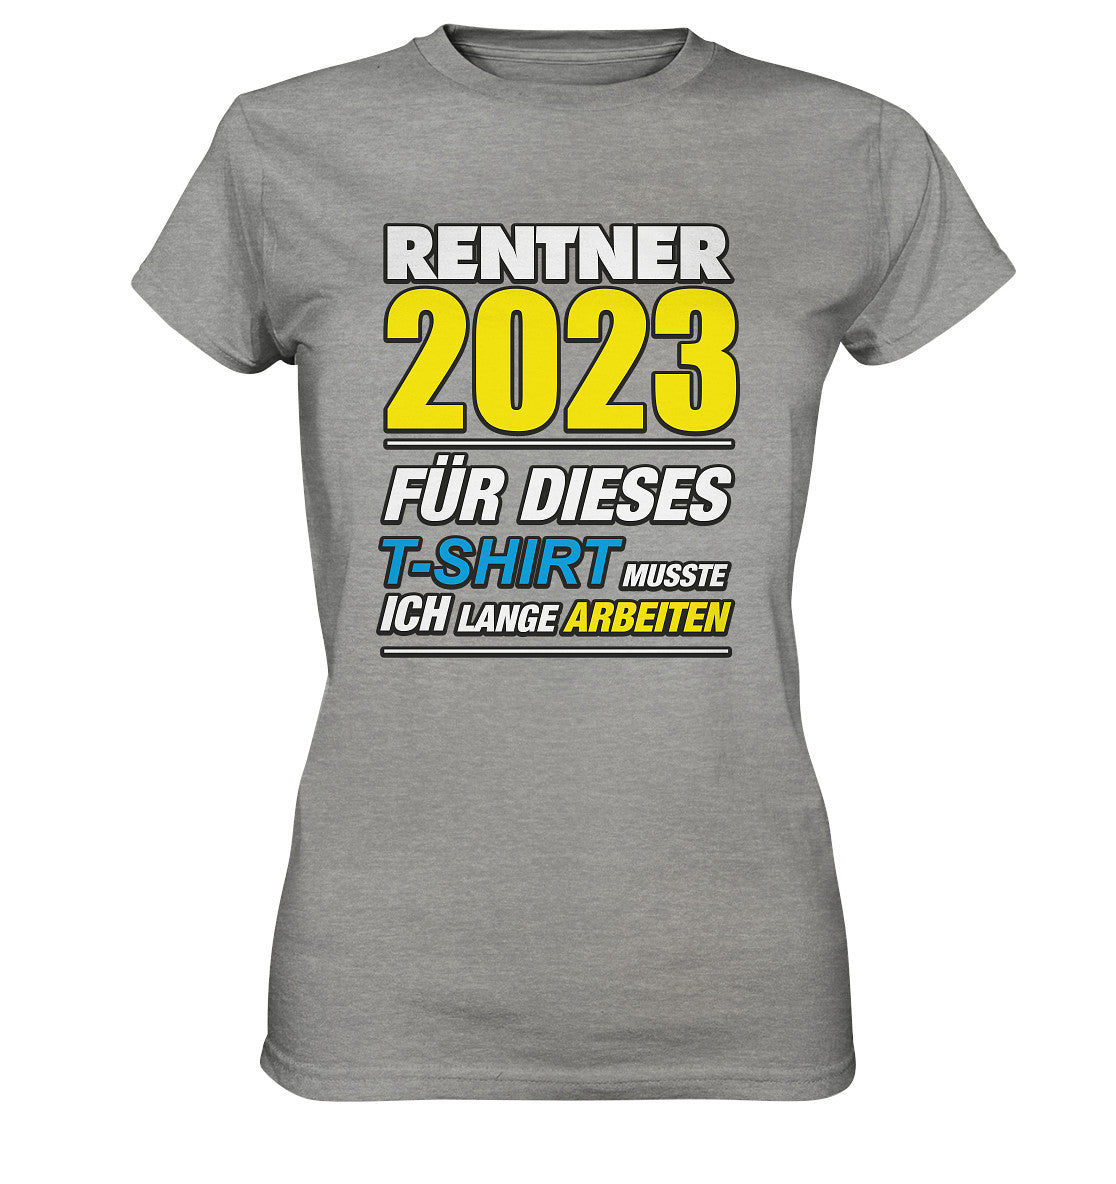 Rentner 2023 für dieses T-Shirt musste ich lange arbeiten - Ladies Premium Shirt